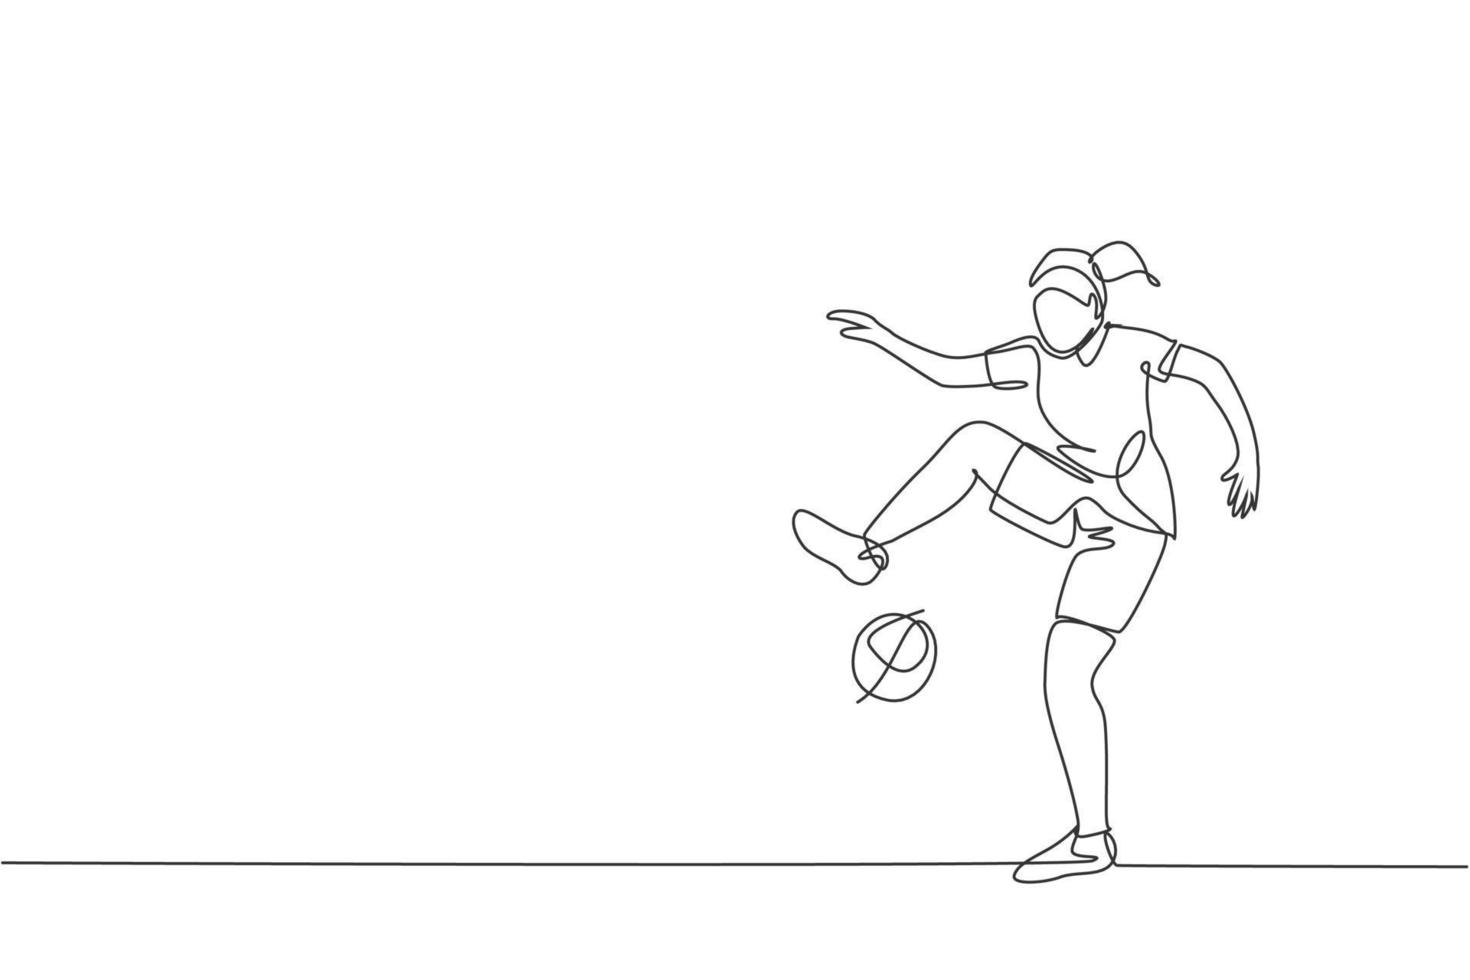 un dibujo de línea continua de un joven deportista de fútbol freestyler practica haciendo malabarismos con la pelota en la calle. concepto de deporte de estilo libre de fútbol. Ilustración de vector de diseño de dibujo de línea única dinámica